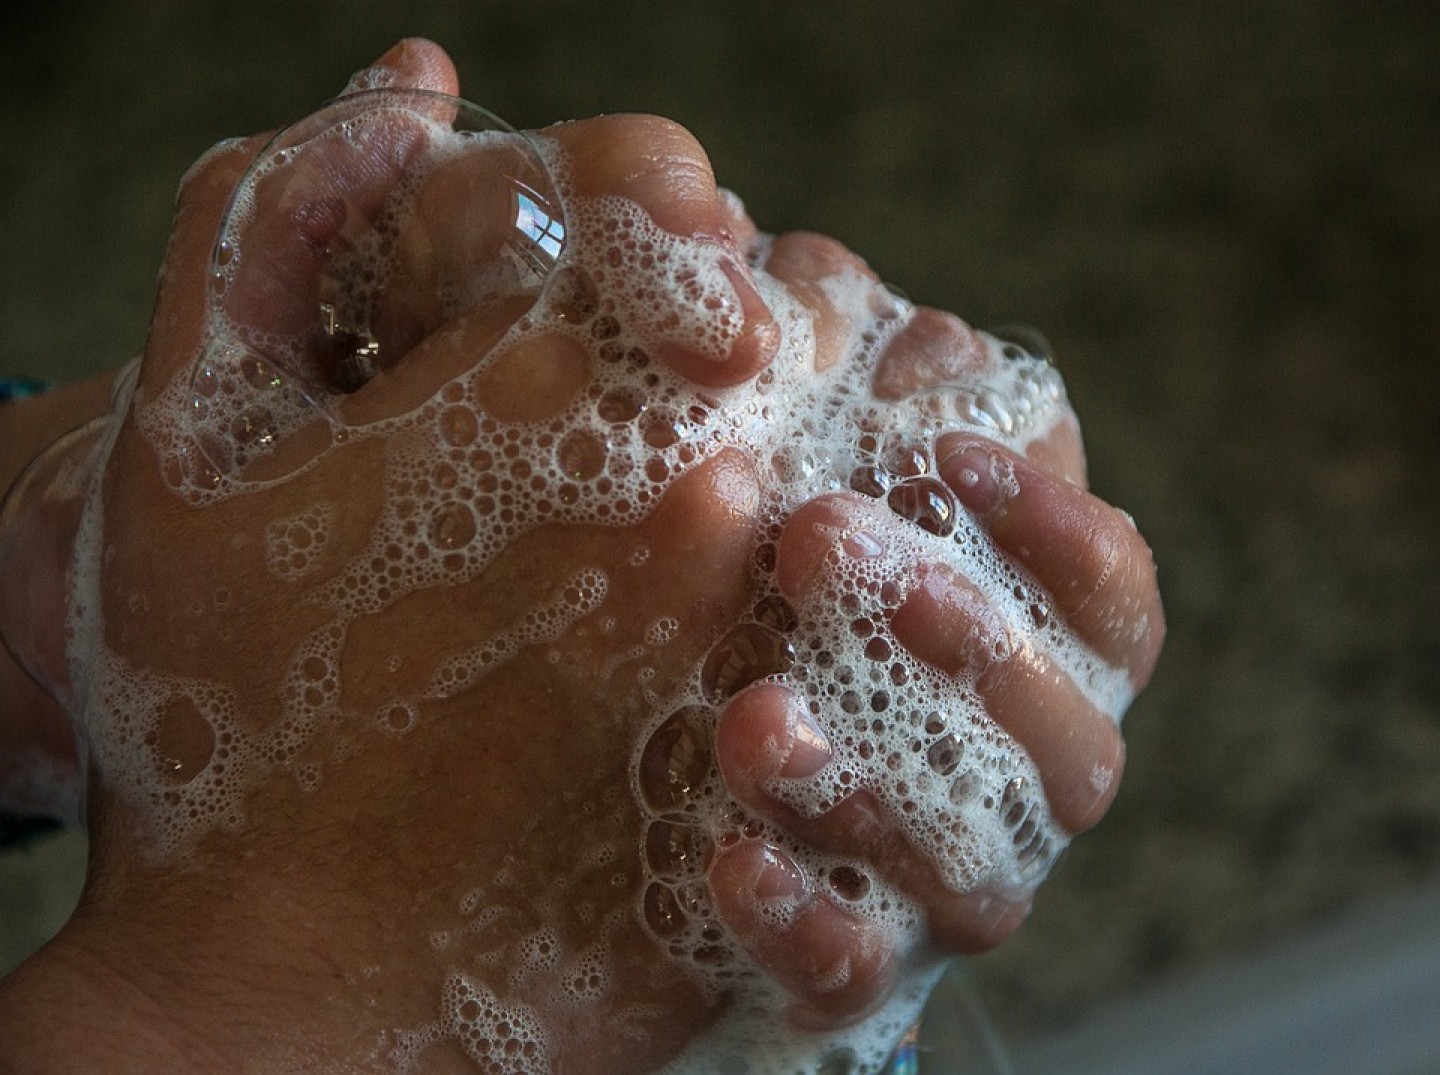 Perete li ruke hladnom ili toplom vodom?